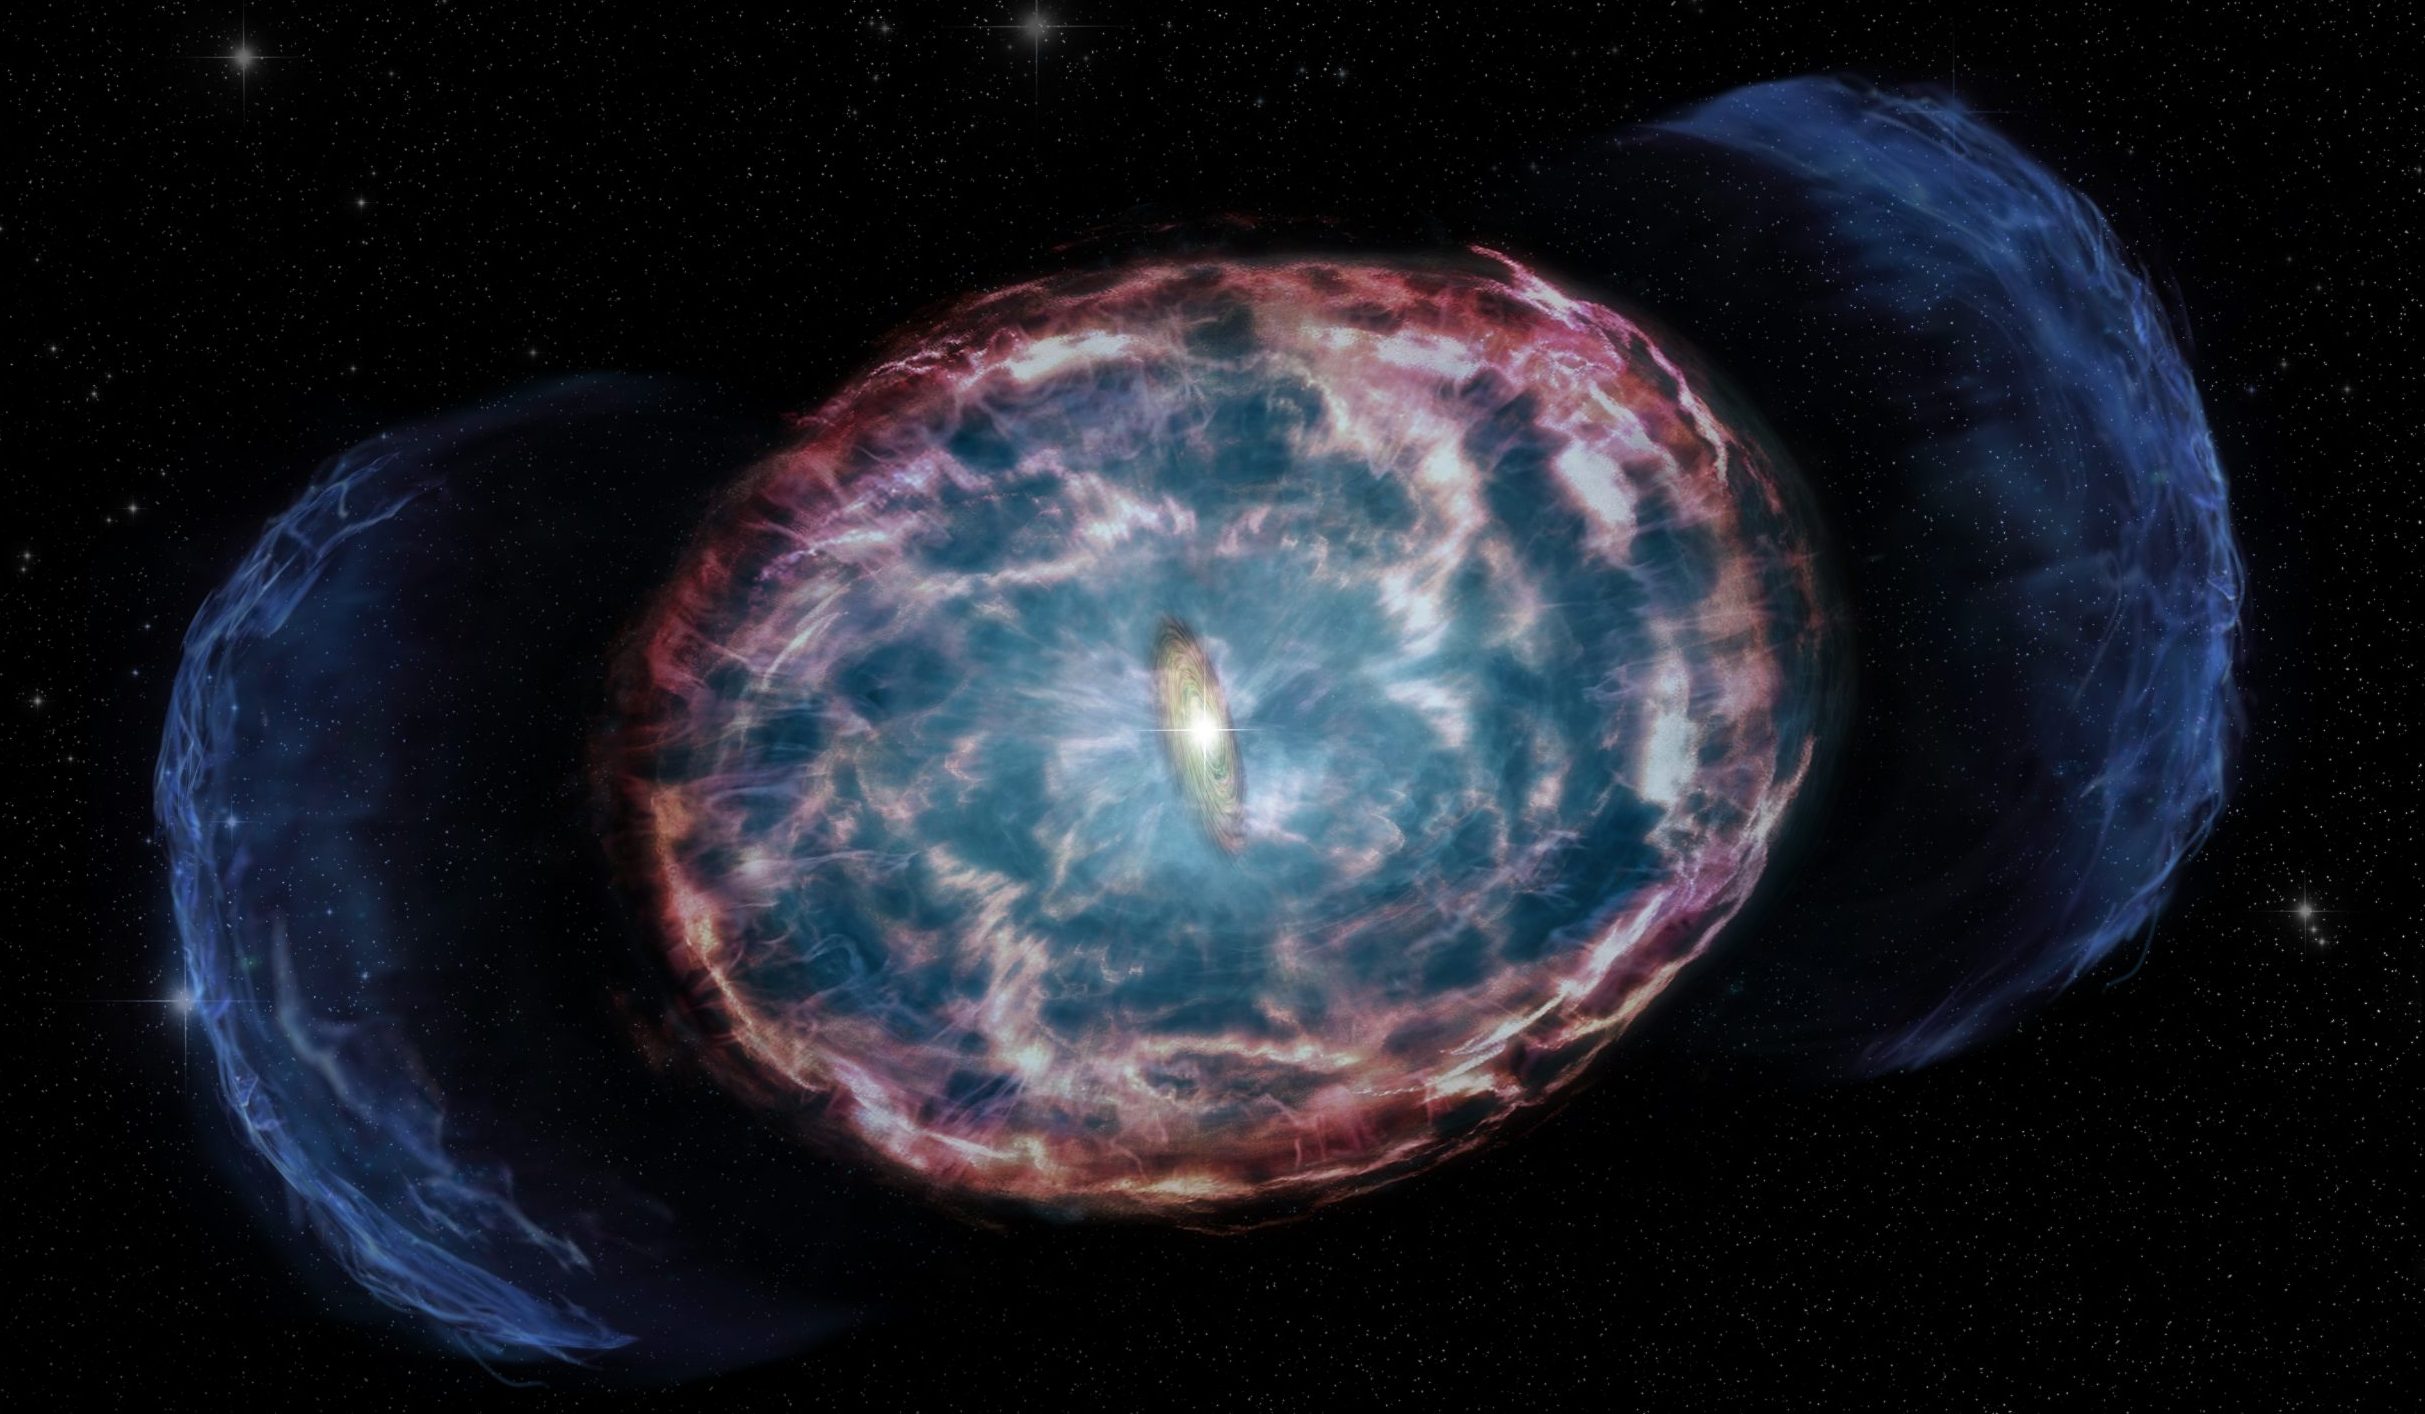 Chandra's image of the kilonova explosion. Credit: A. Hajela et al., M. Weiss / CXC / NASA